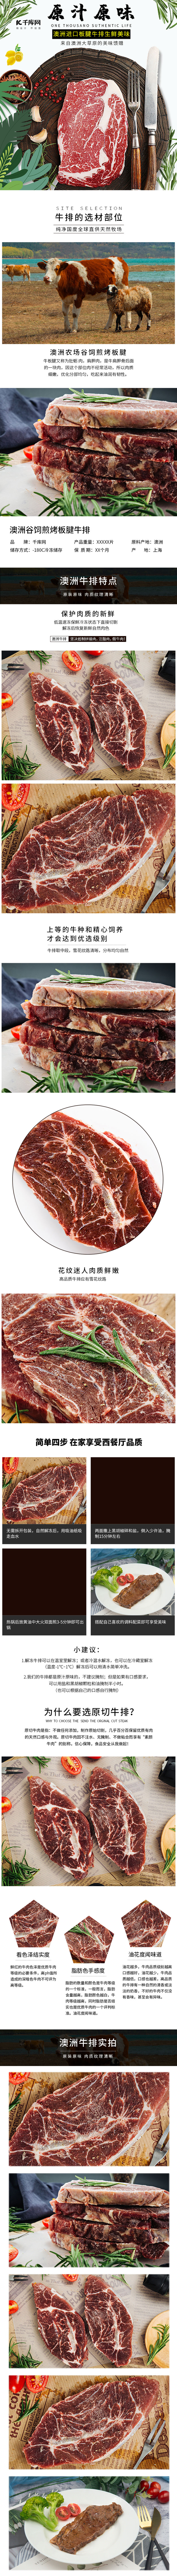 澳洲进口新鲜牛排牛肉生鲜肉类美食电商详情页图片